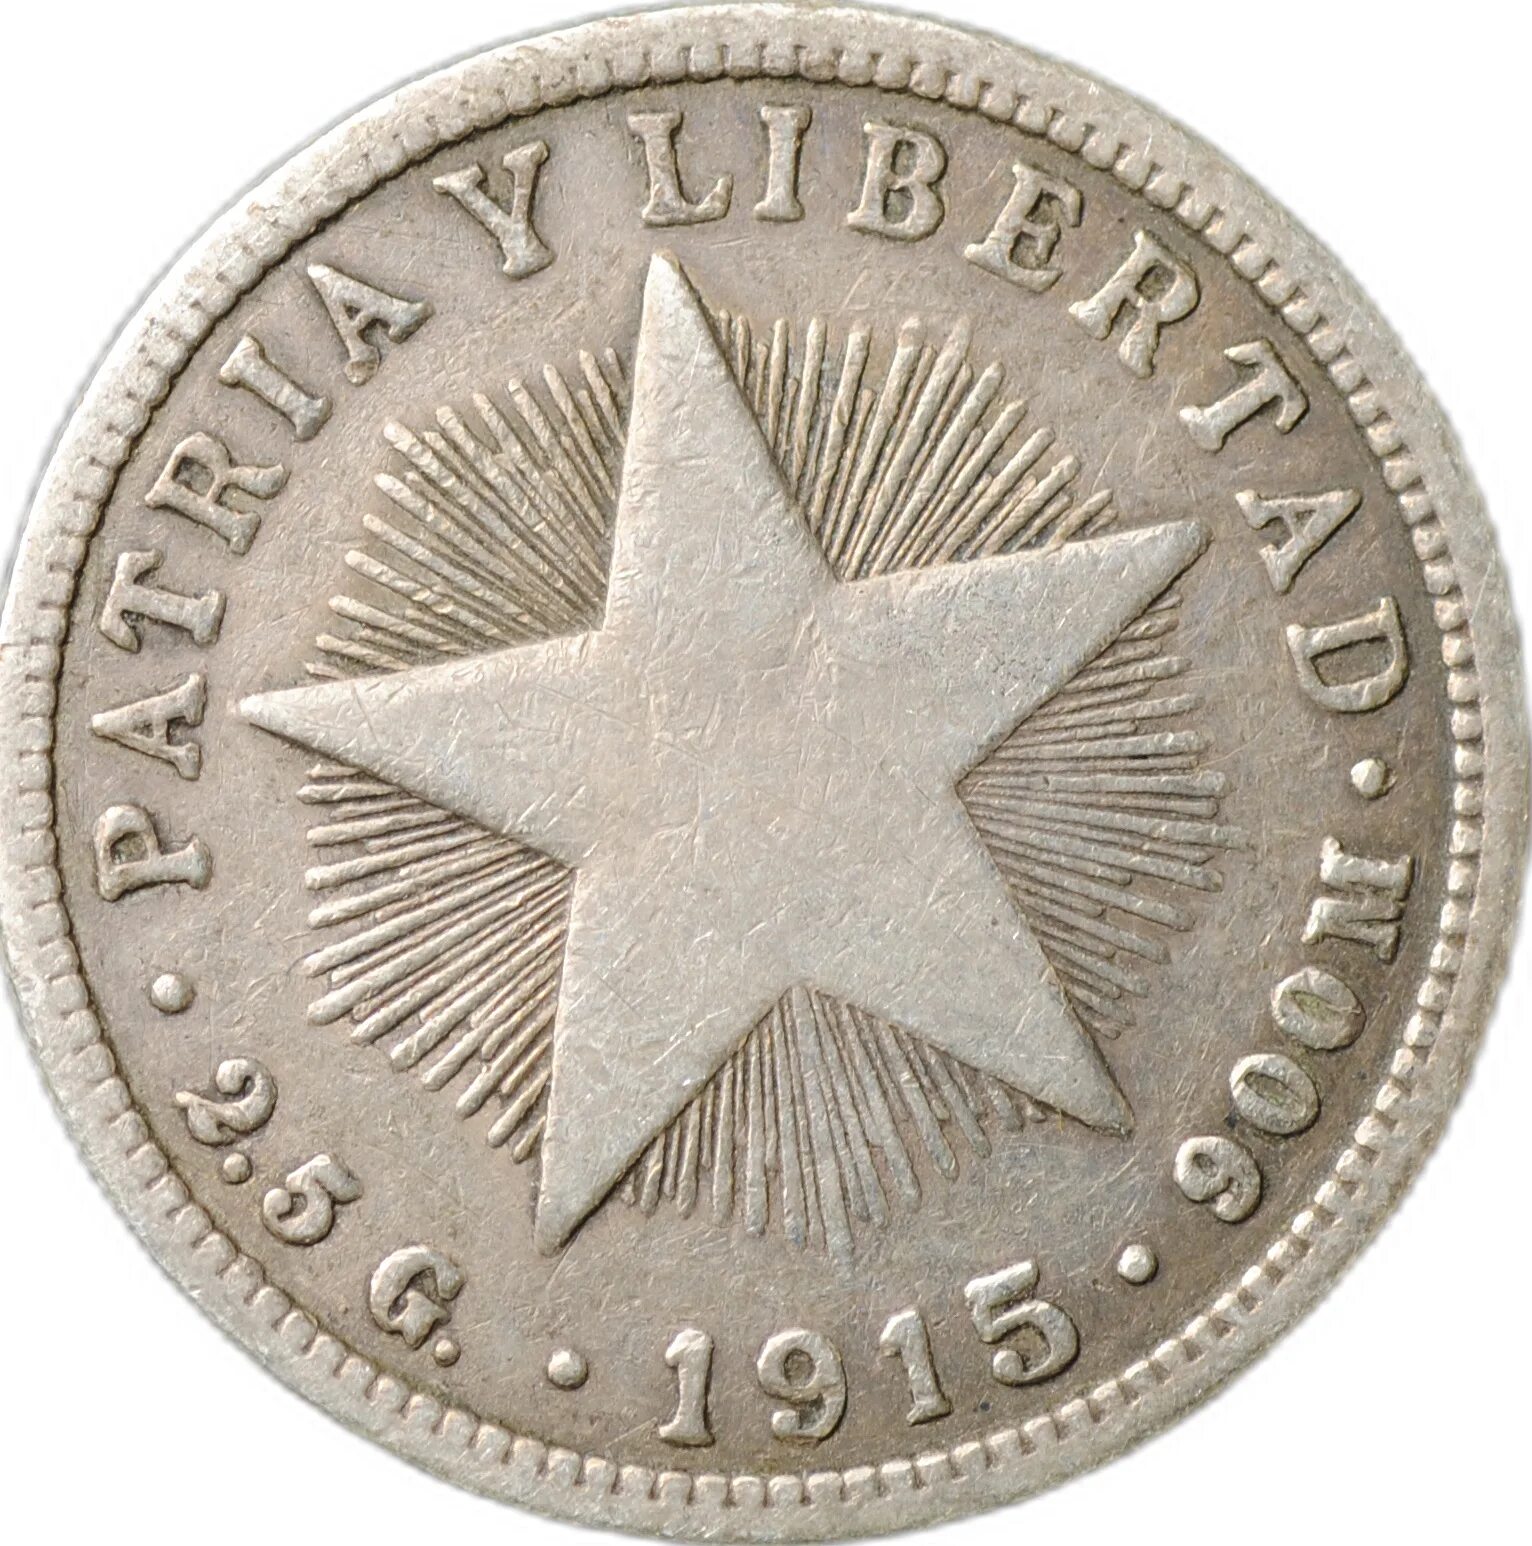 20 Кубинских сентавос монета. Кубинская монета 1962. Монеты Куба 1916 год 10 сентаво. Patria o muerte монета.